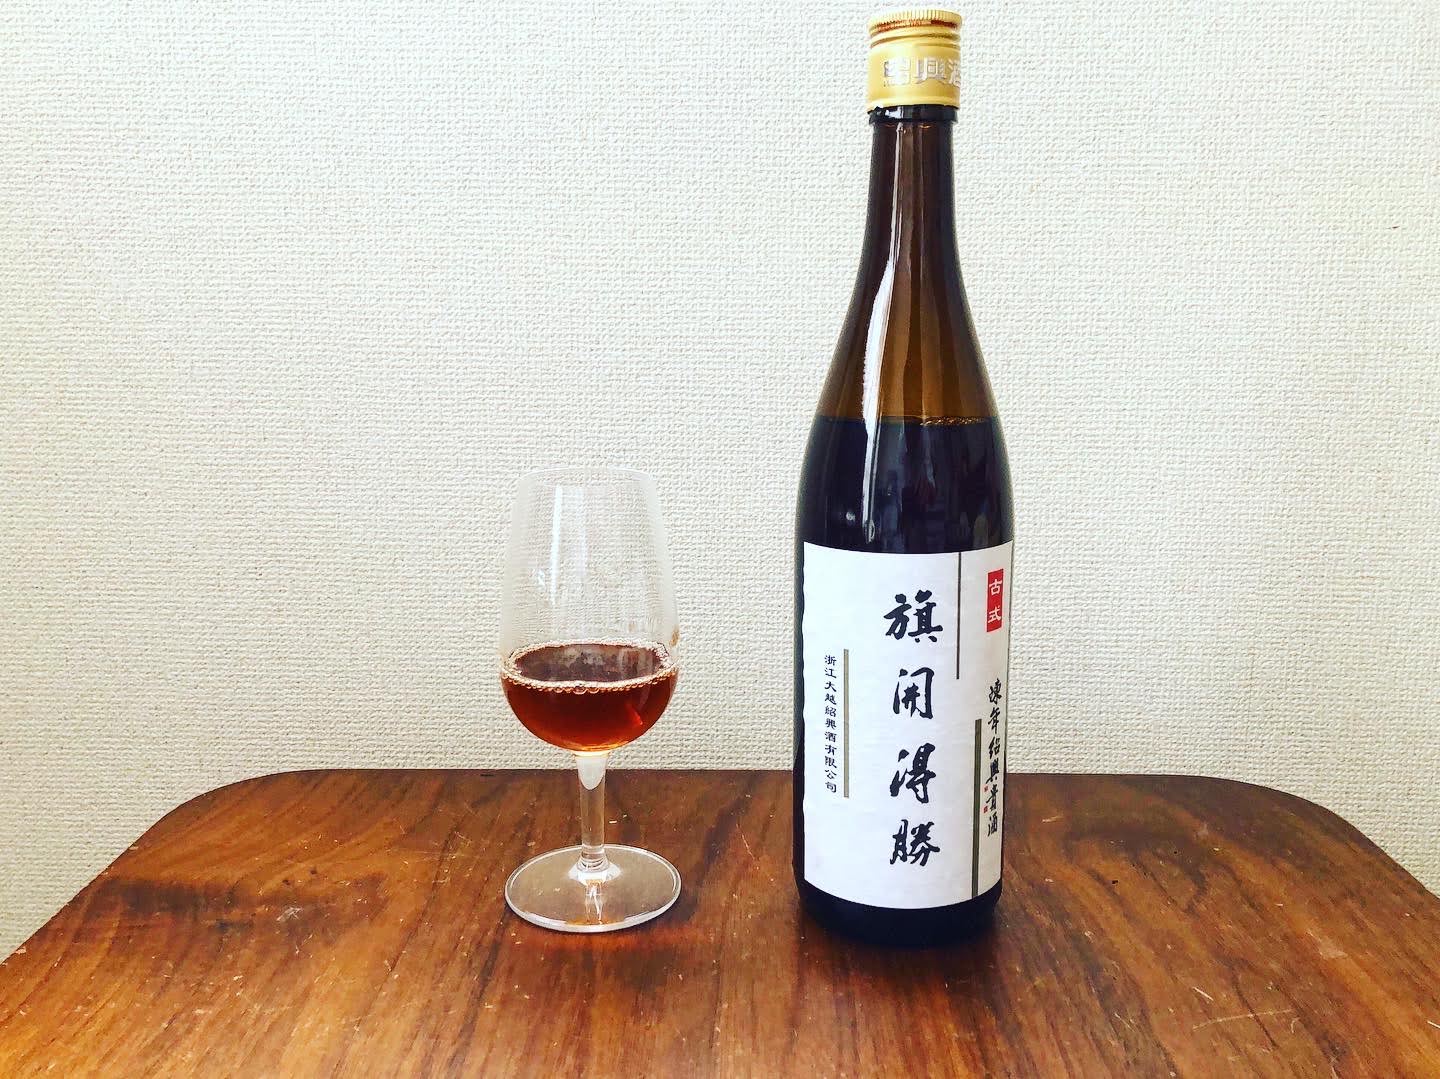 日本で買える紹興酒「紹興大越貴酒5年」の写真2枚目です。